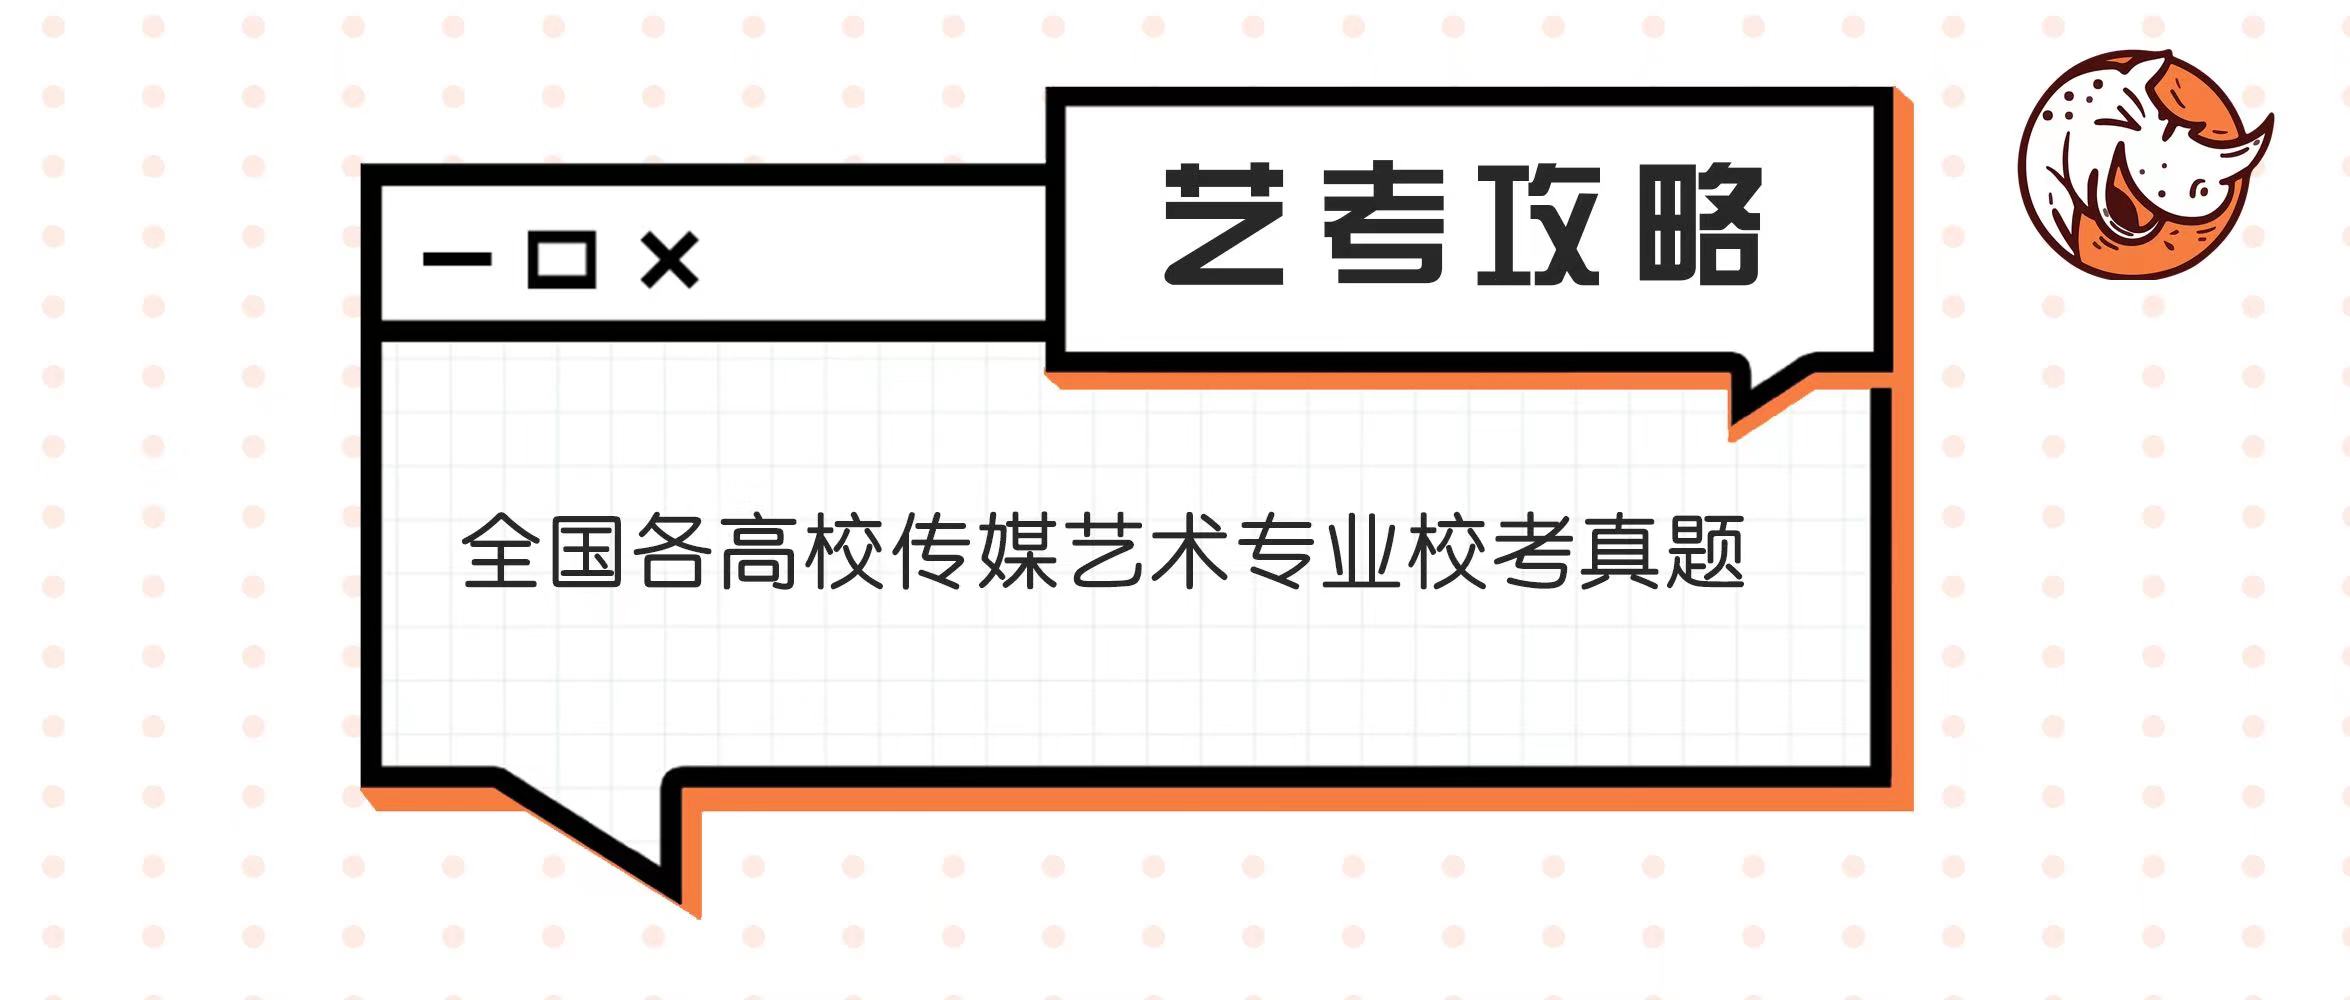 2021 年四川电影电视学院广播电视编导专业招生考试模拟题